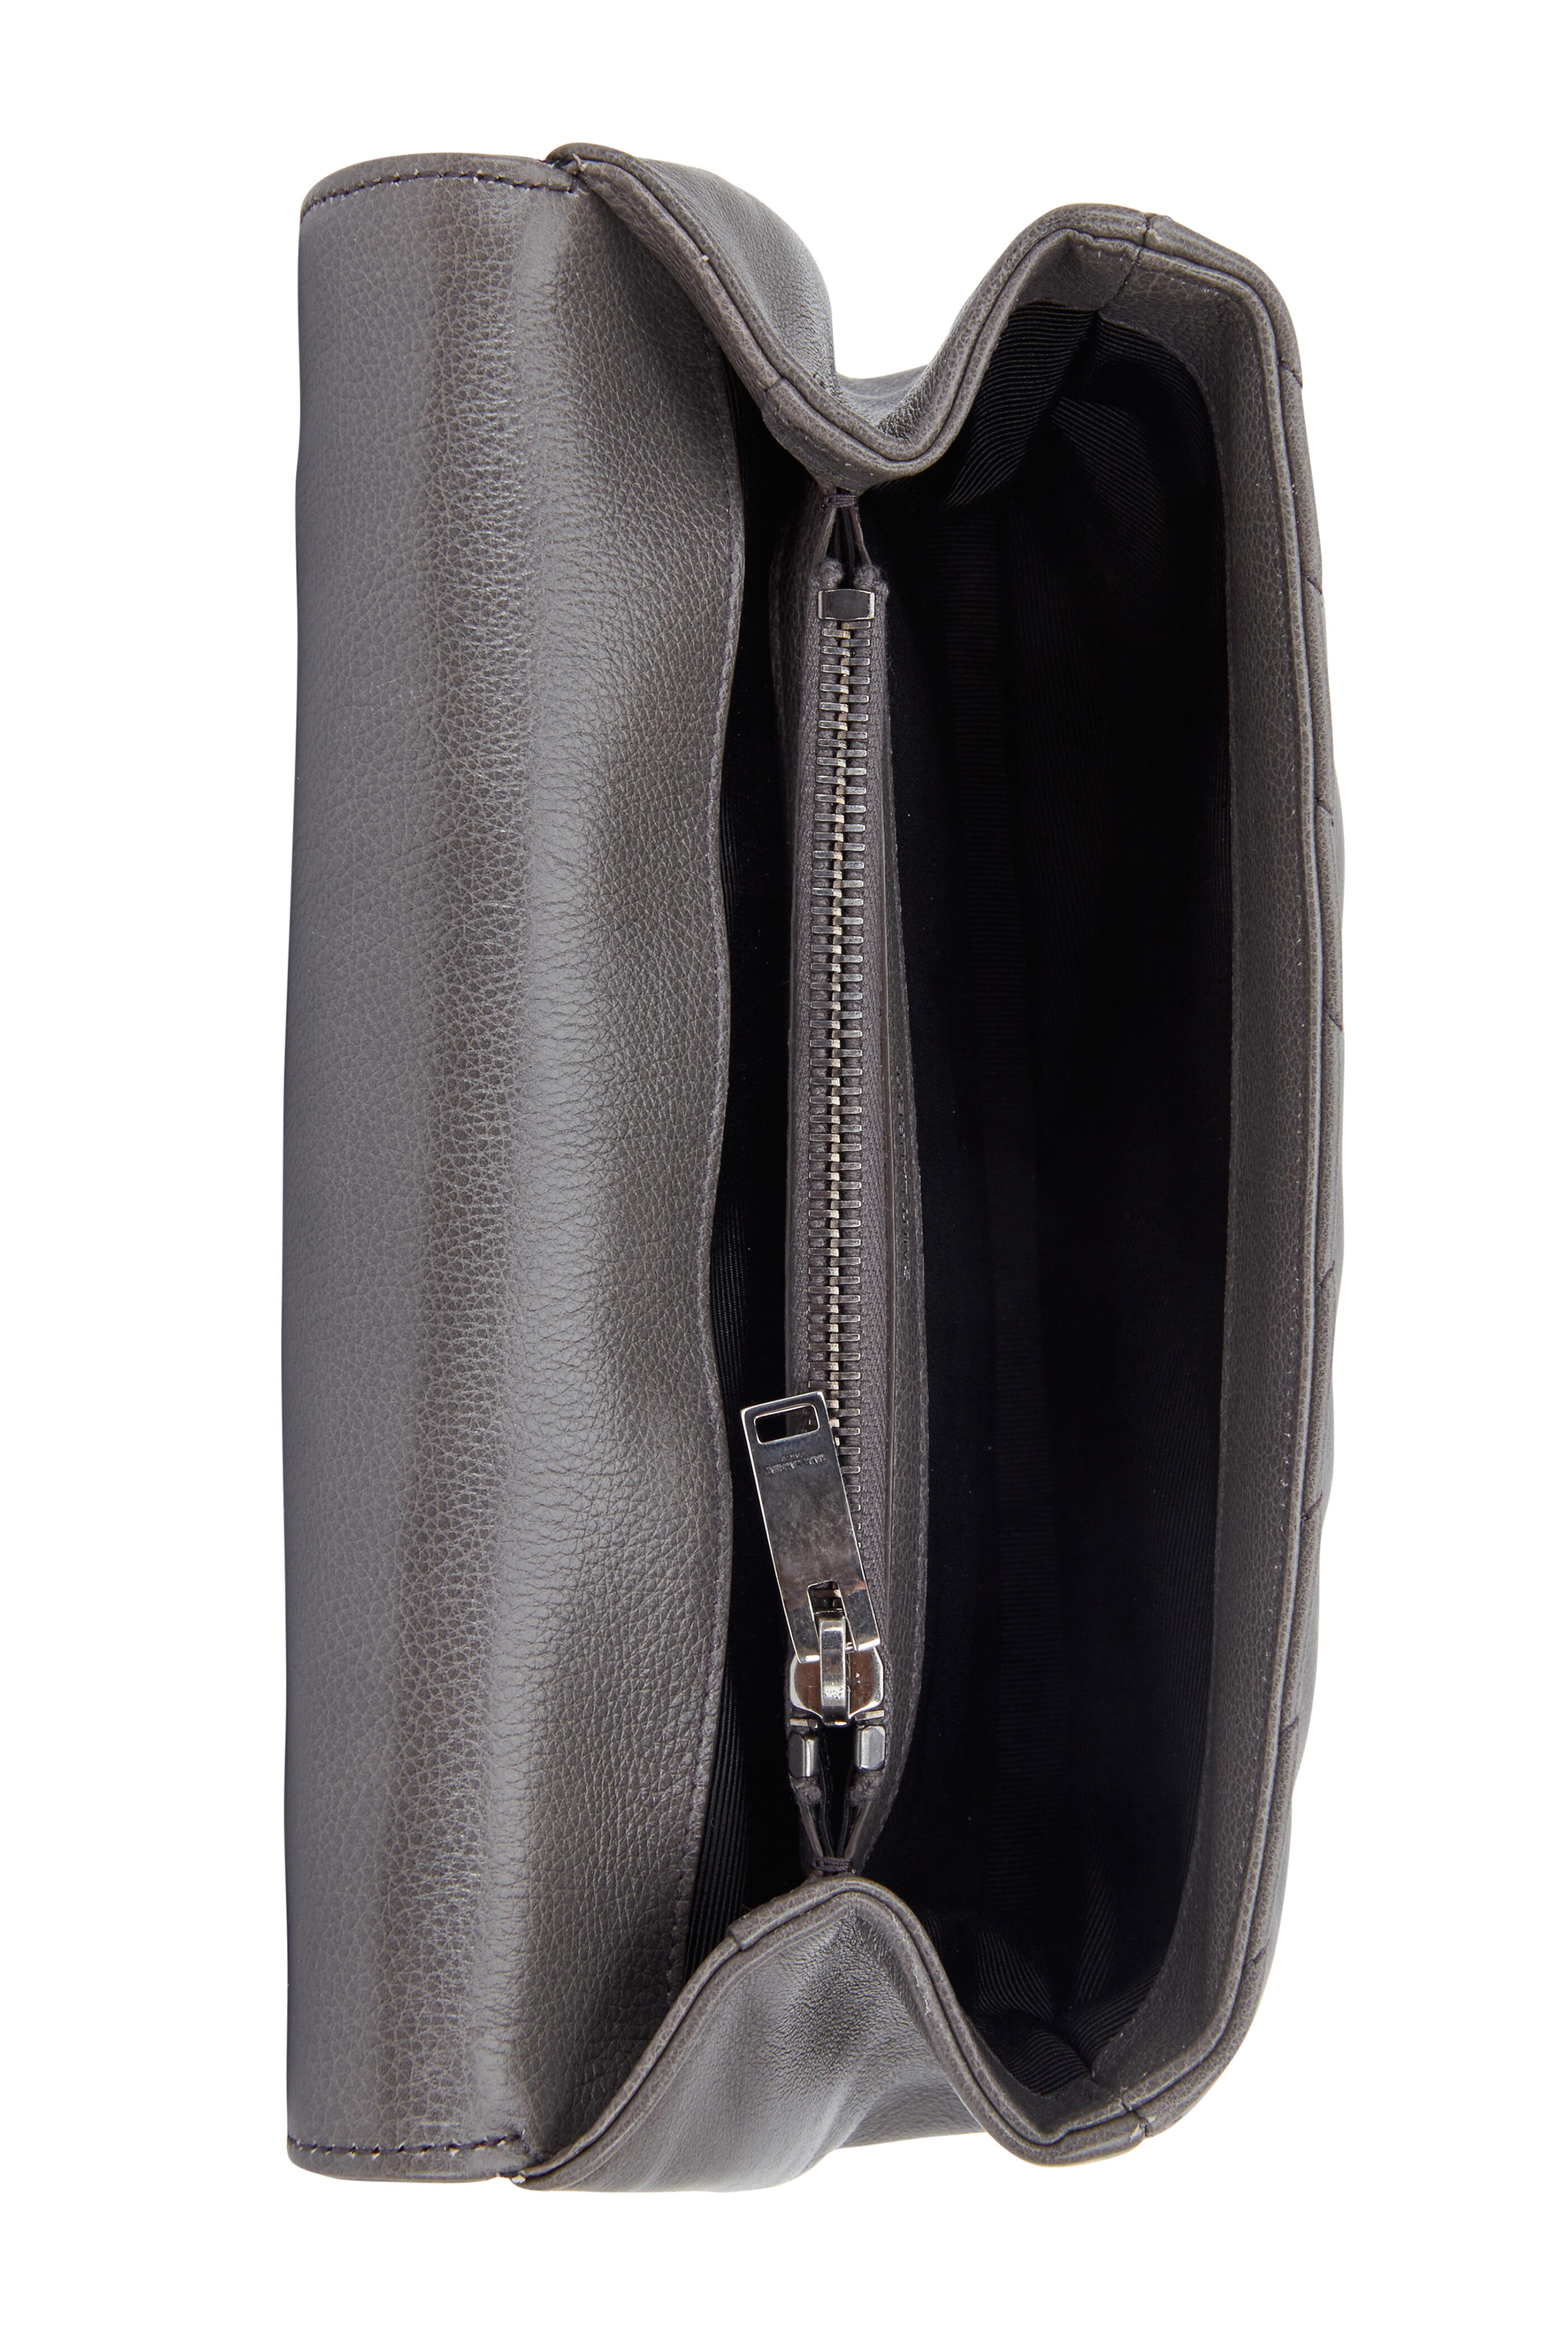 Shoulder bags Saint Laurent - Monogram matelassé leather satchel -  396910BOW011000